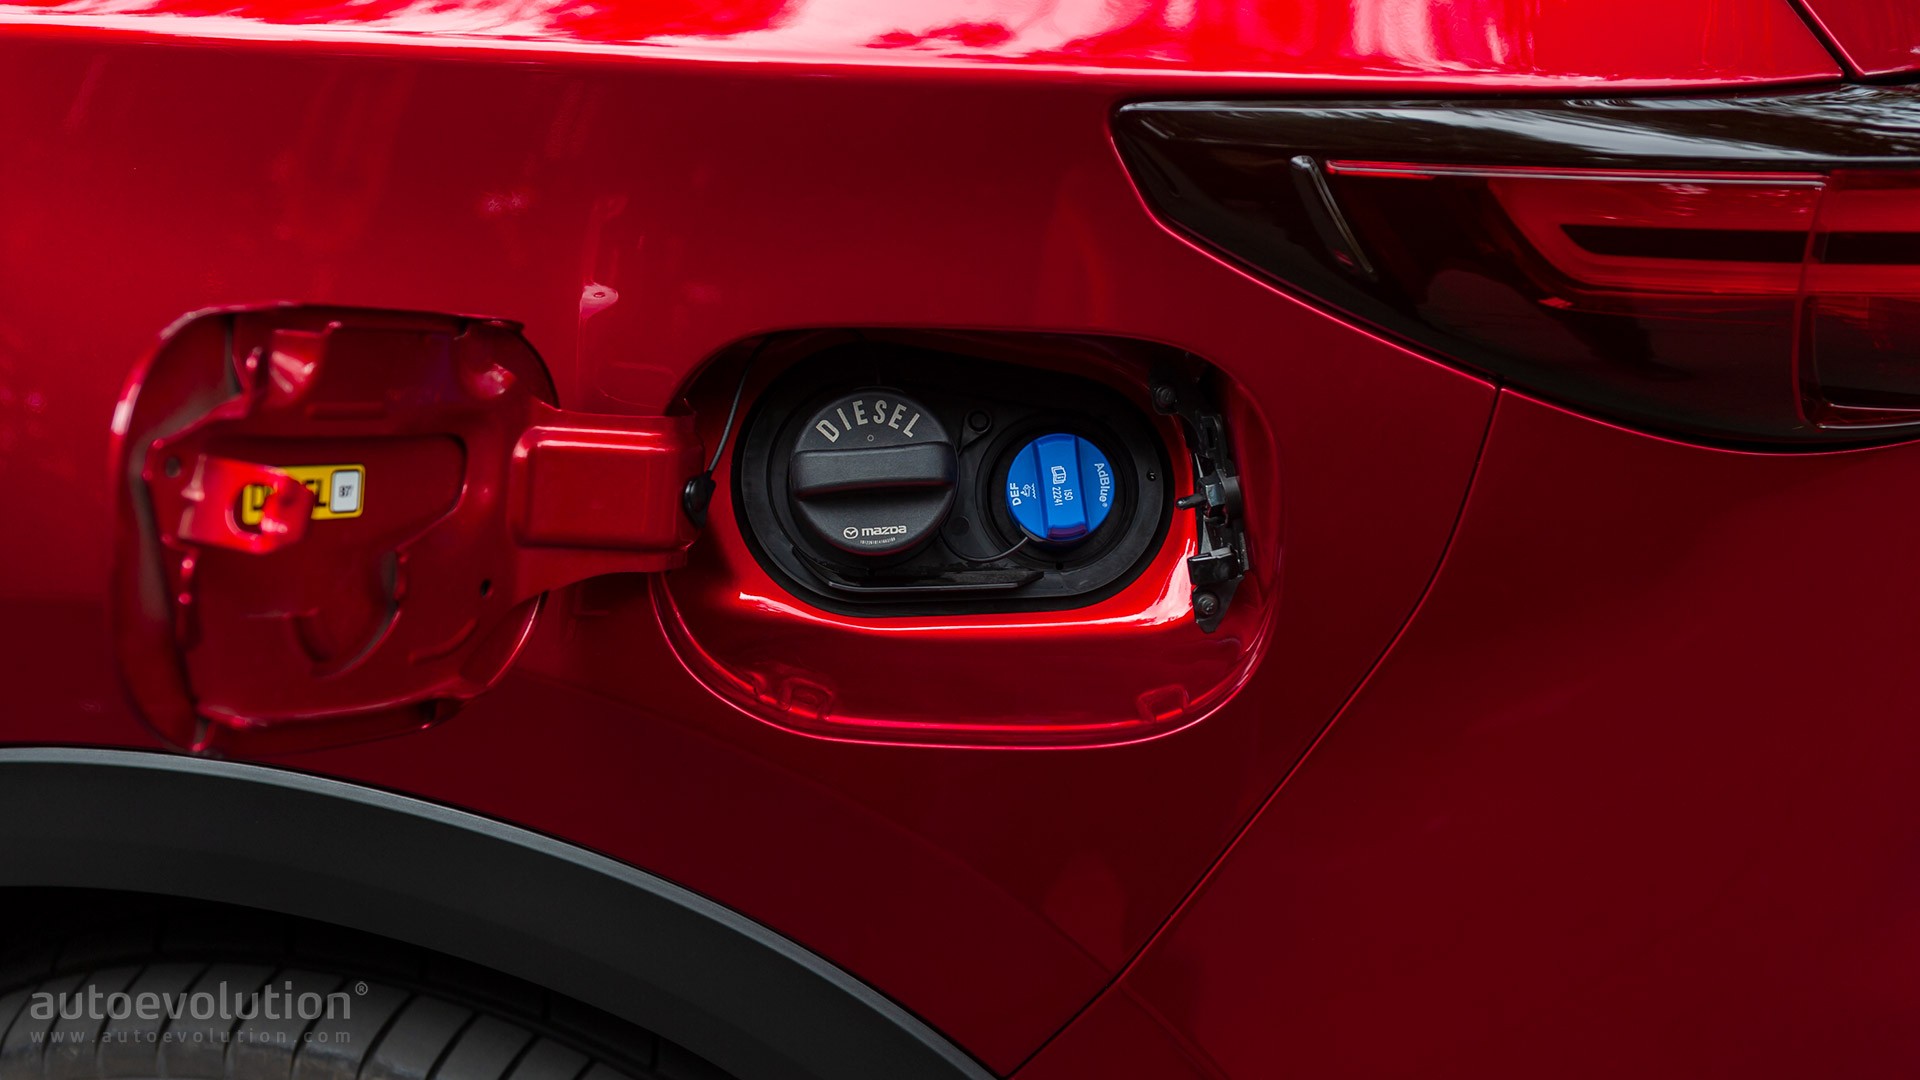 2019 Mazda Cx-5 2.2 Skyactiv-D Review & Testdrive - Autoevolution